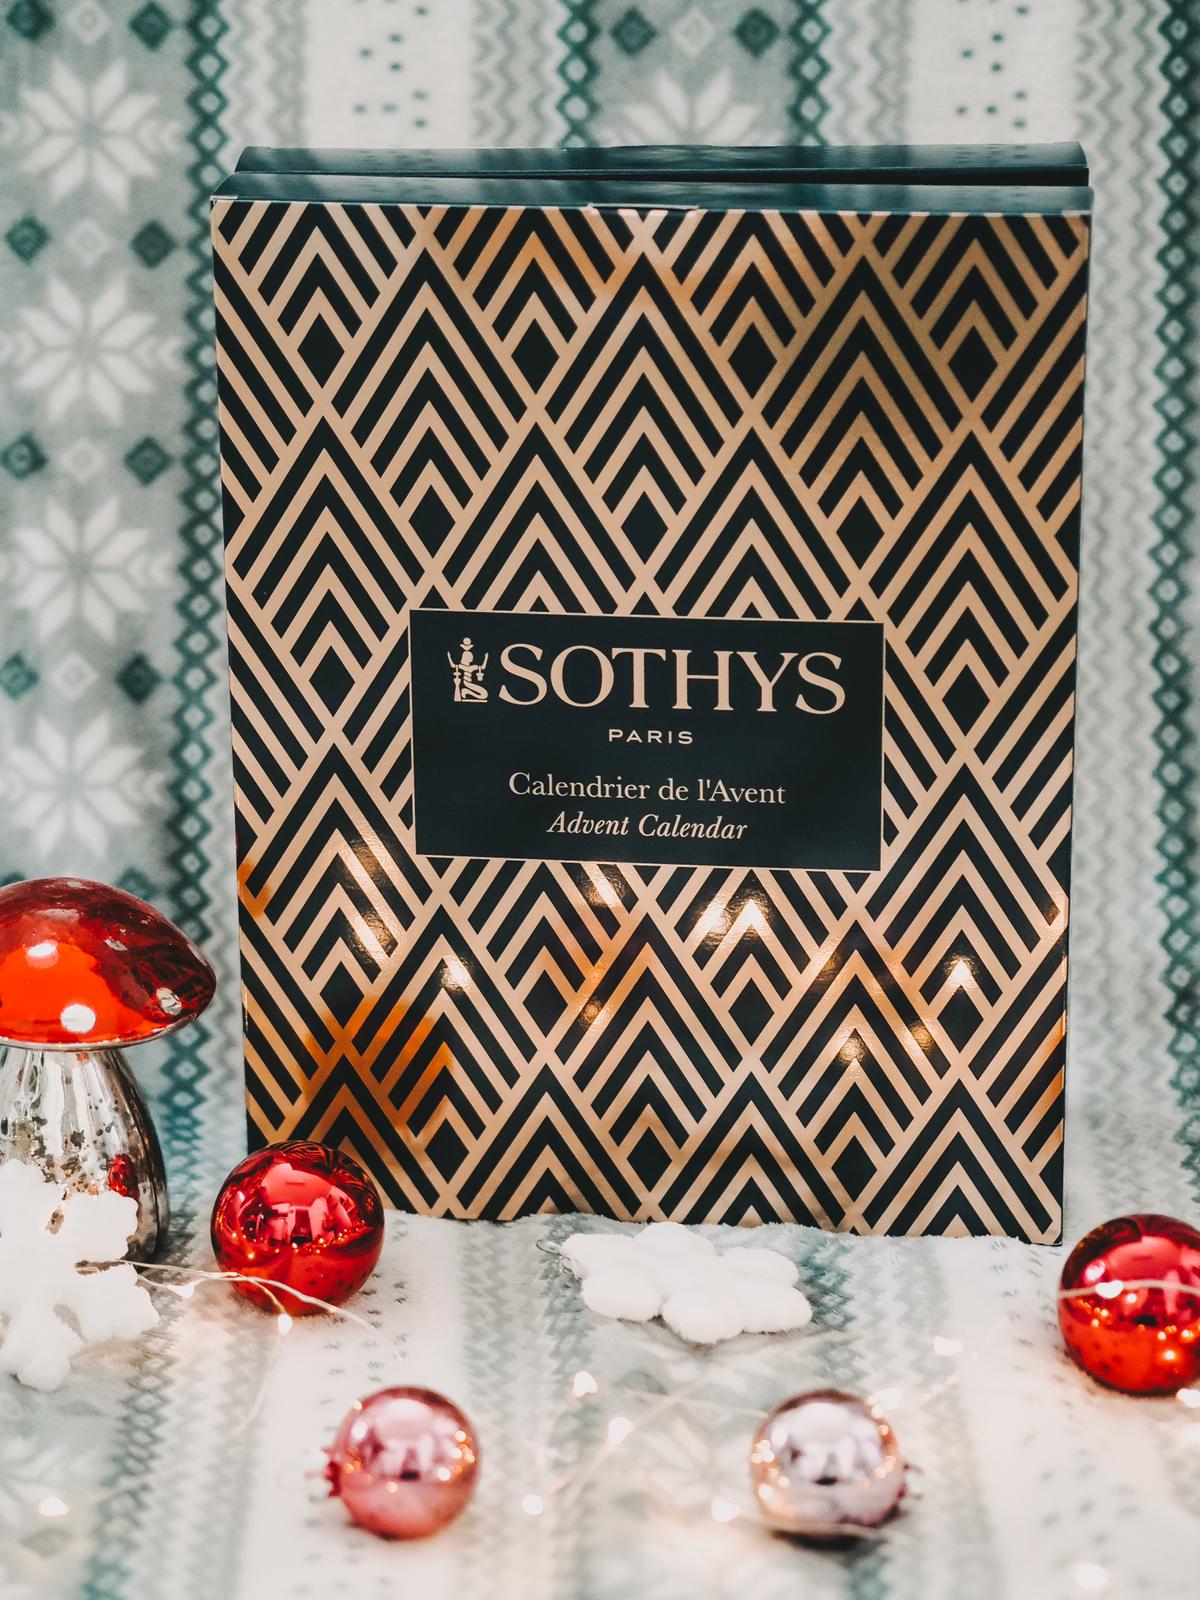 Der Sothys Adventskalender 2019 mit 24 hochwertigen Beauty-Überraschungen versüsst uns die kommende Weihnachtszeit. Heute mehr dazu auf meinem Beauty Blog !